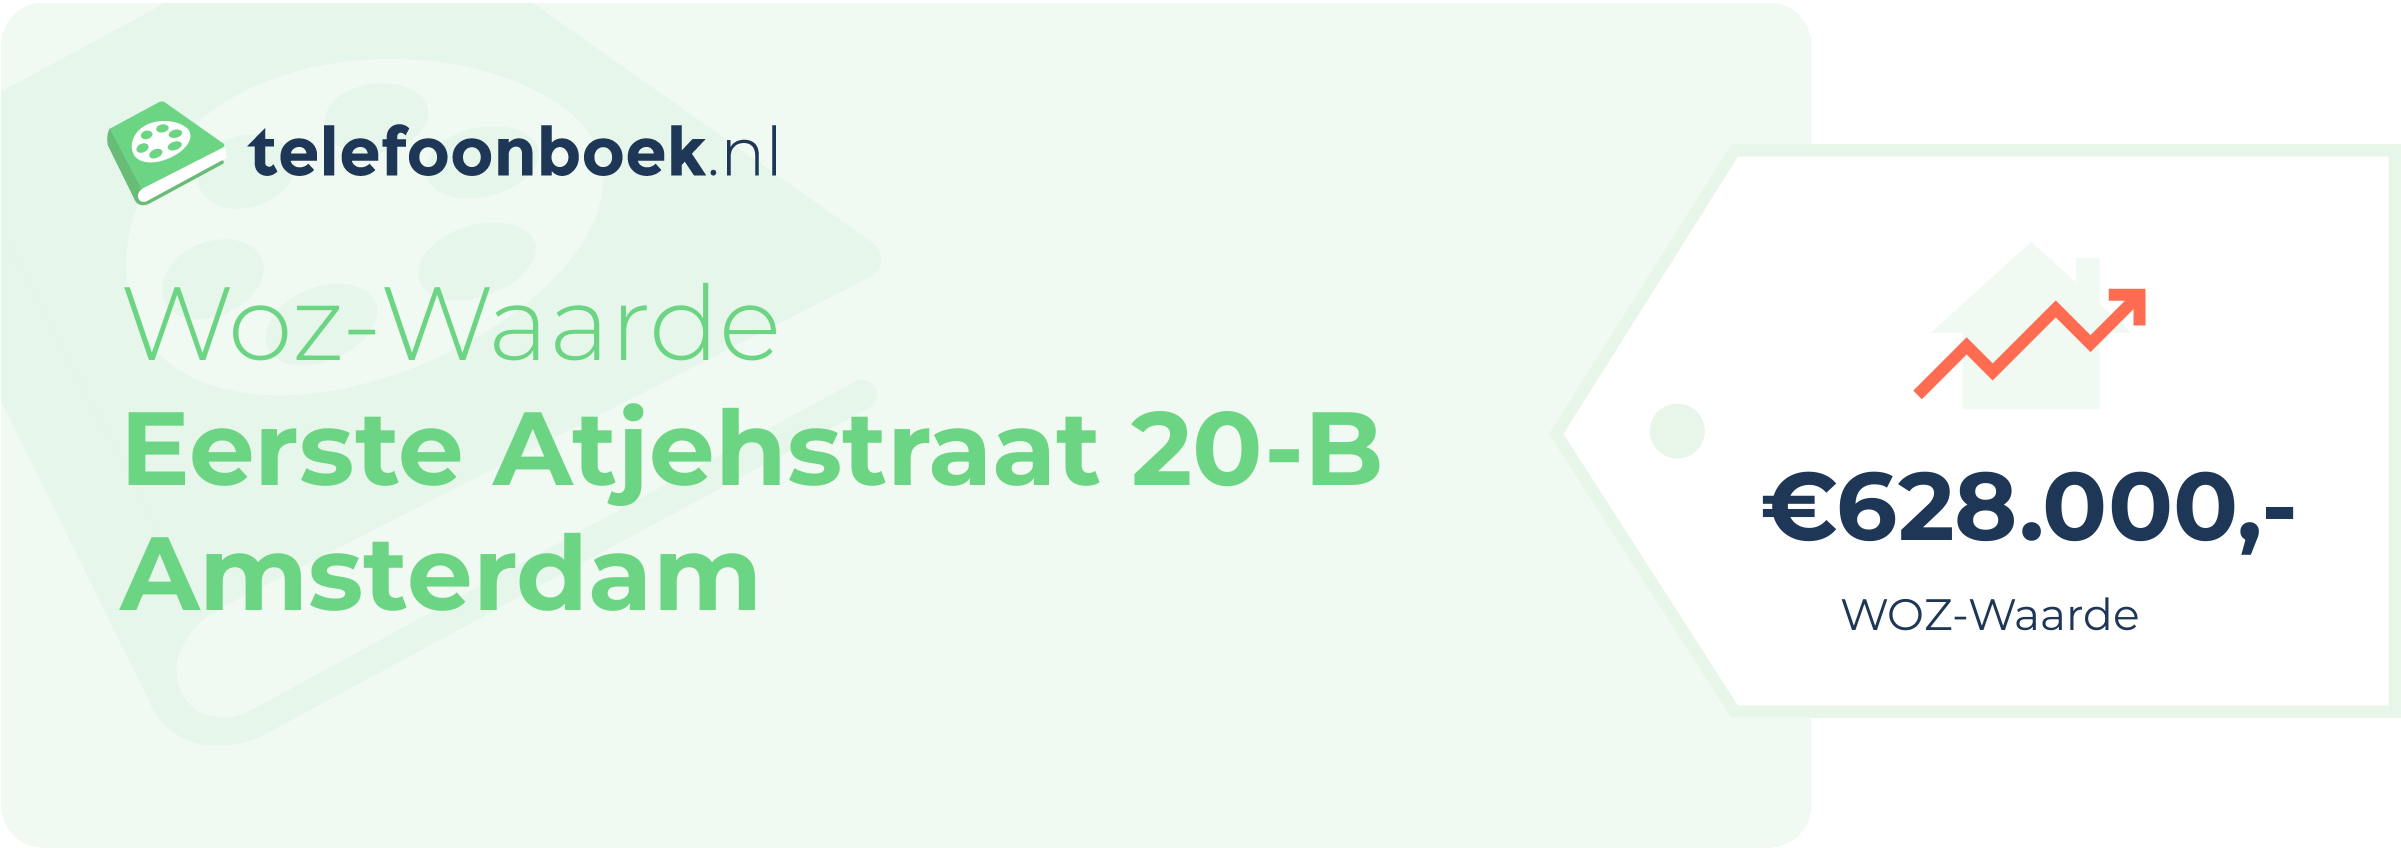 WOZ-waarde Eerste Atjehstraat 20-B Amsterdam